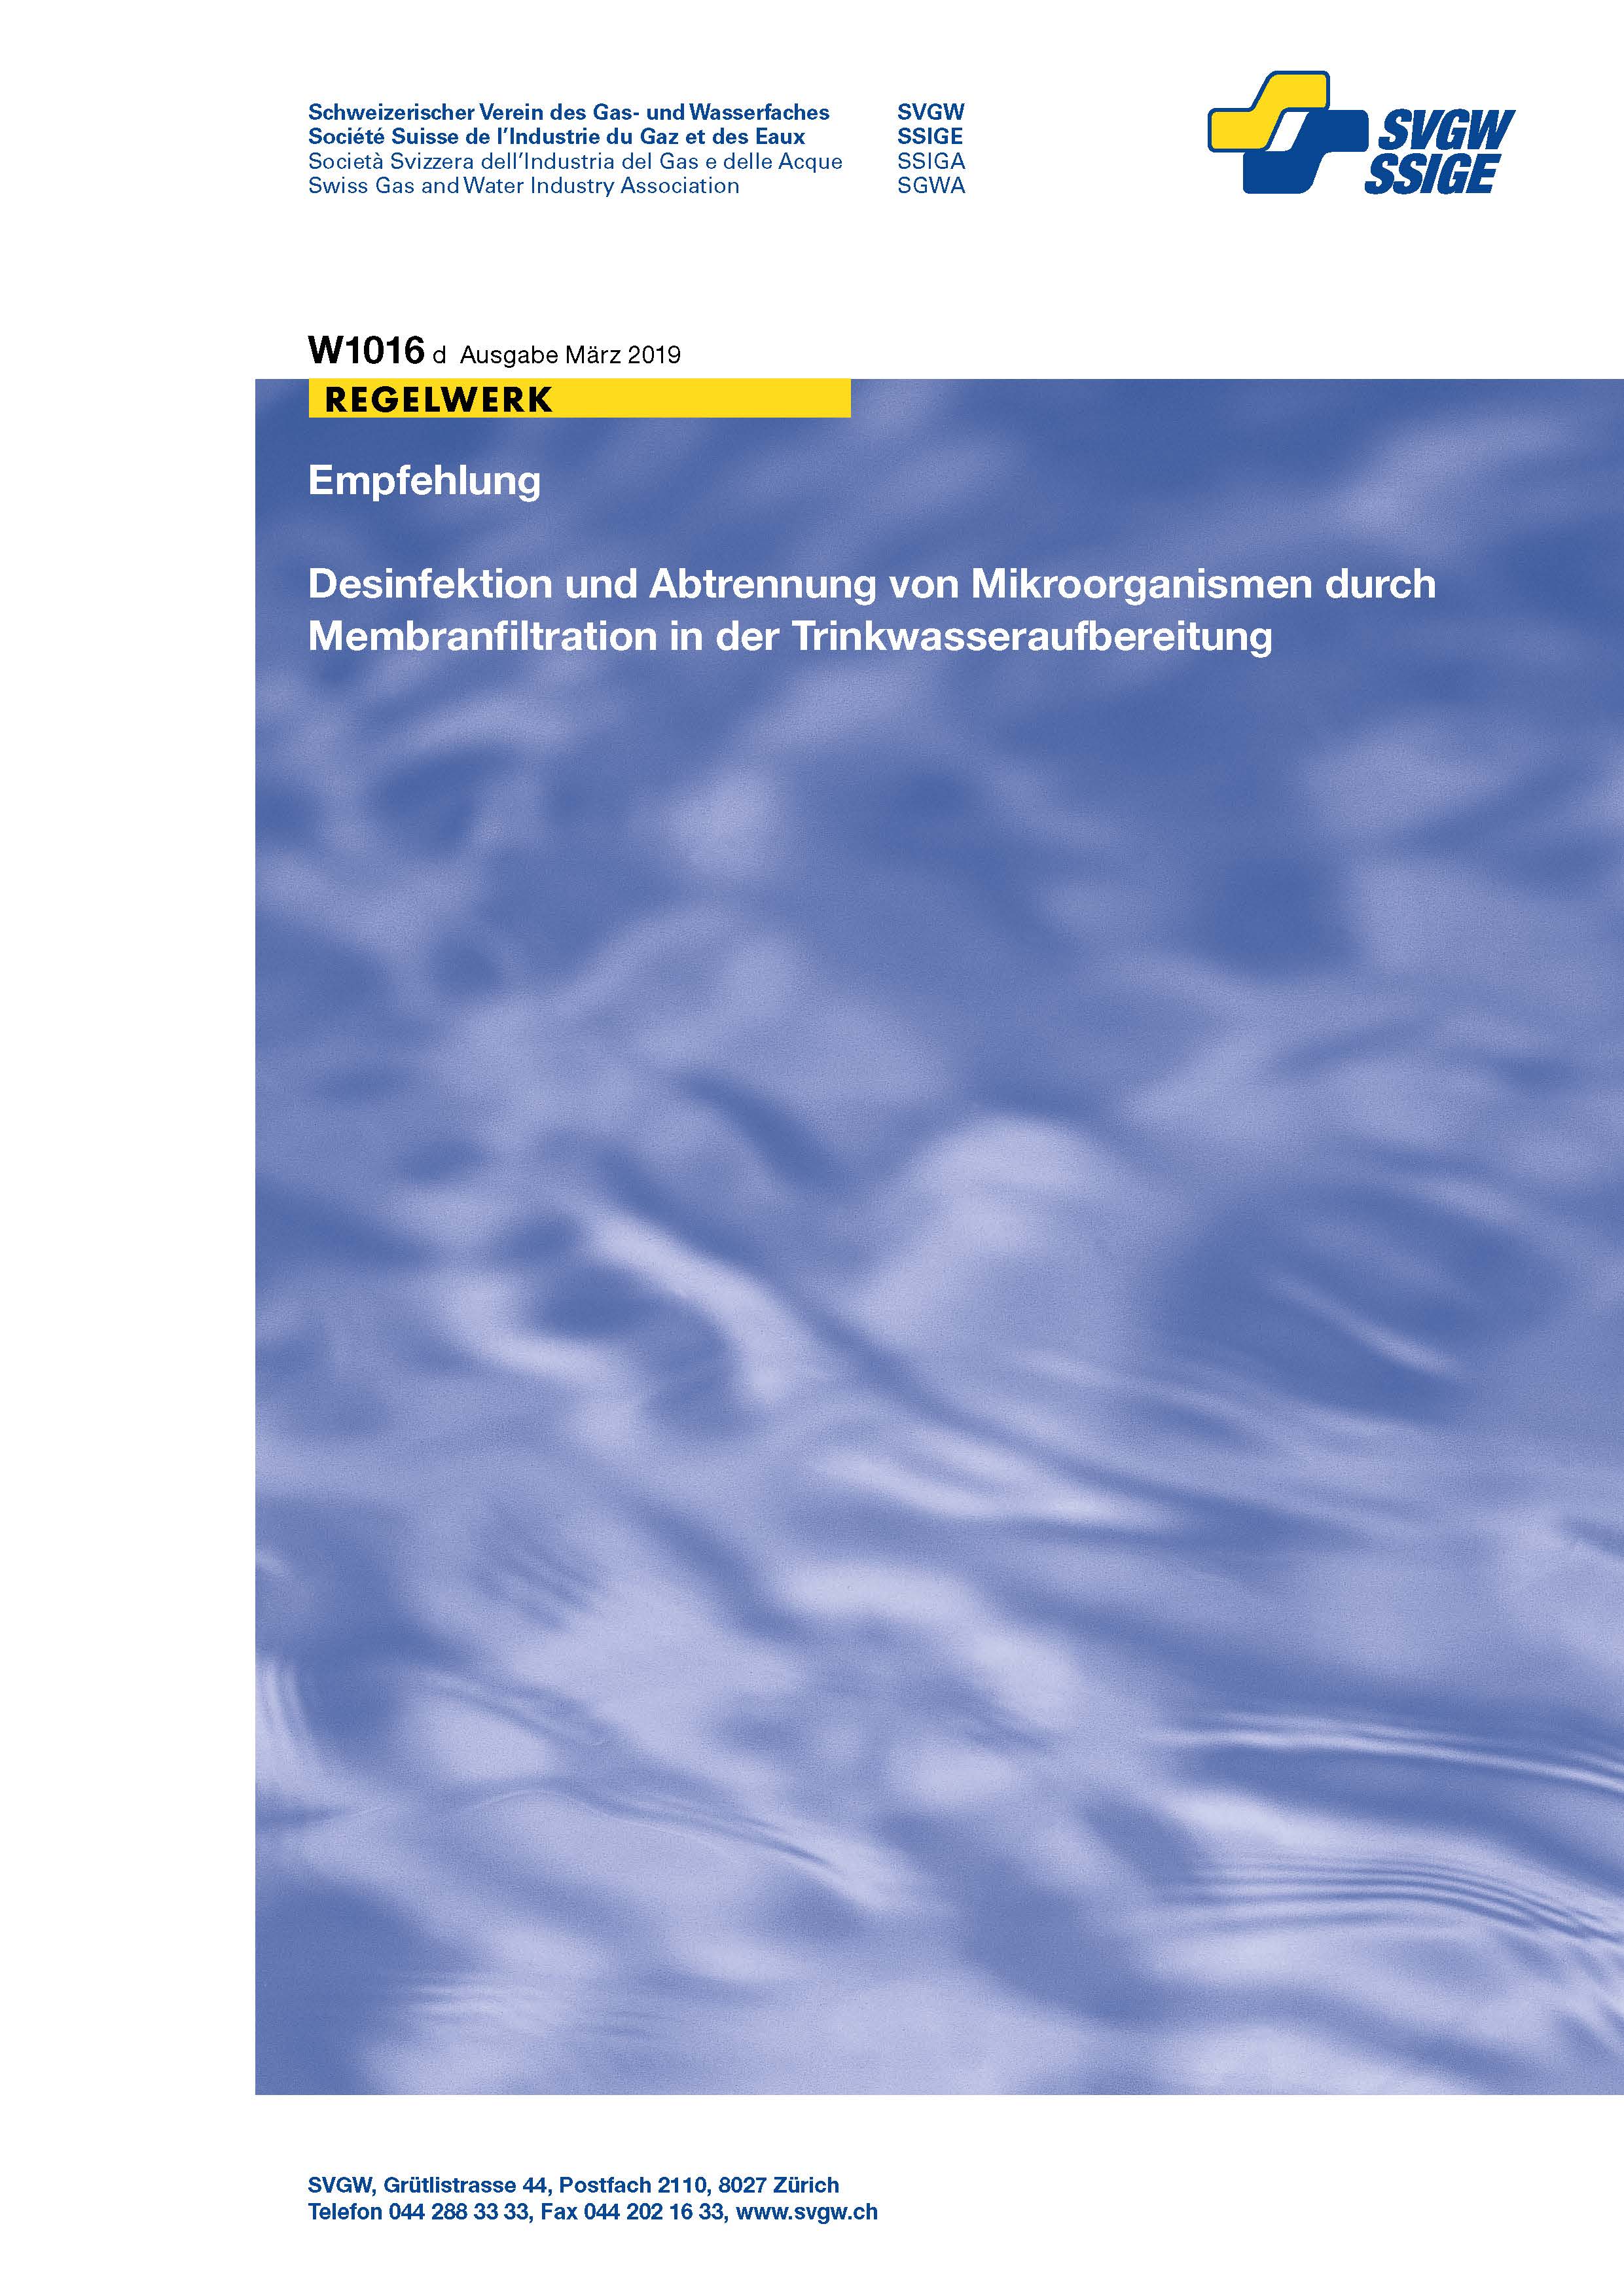 W1016 d Empfehlung; Desinfektion und Abtrennung von Mikroorganismen durch Membranfiltration in der Trinkwasseraufbereitung (2)